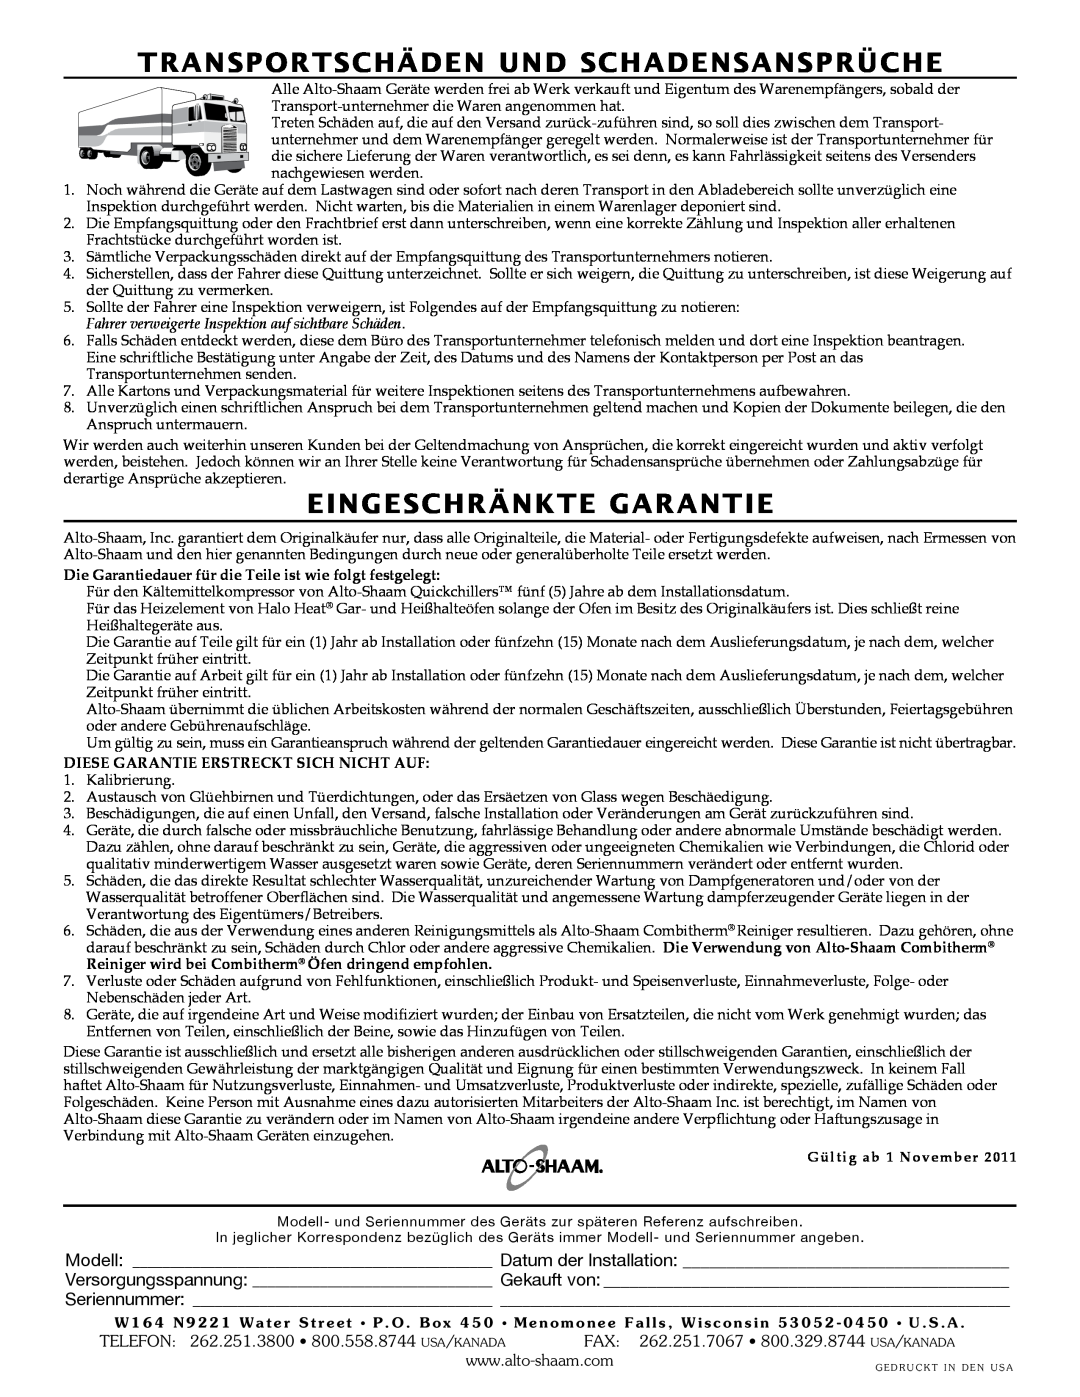 Alto-Shaam 500-E/HD manual Transportschäden Und Schadensansprüche, Eingeschränkte Garantie, Gültig ab 1 November 